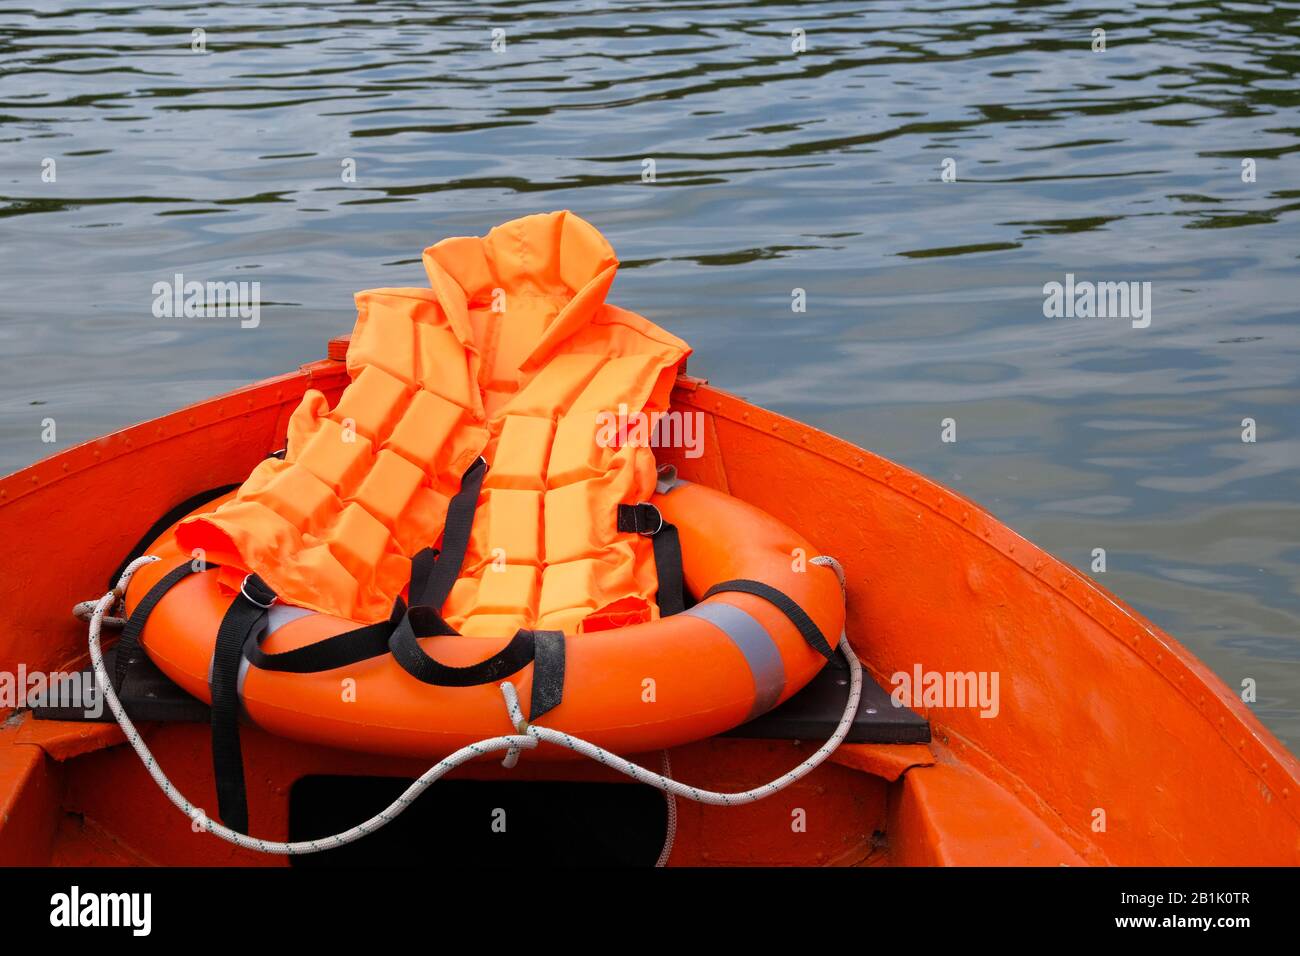 Ensemble de sauveteur sur l'eau en bateau d'été, gilet de sauvetage, bouée de sauvetage en couleur orange. Concept de sauvetage sur l'eau en été. Banque D'Images